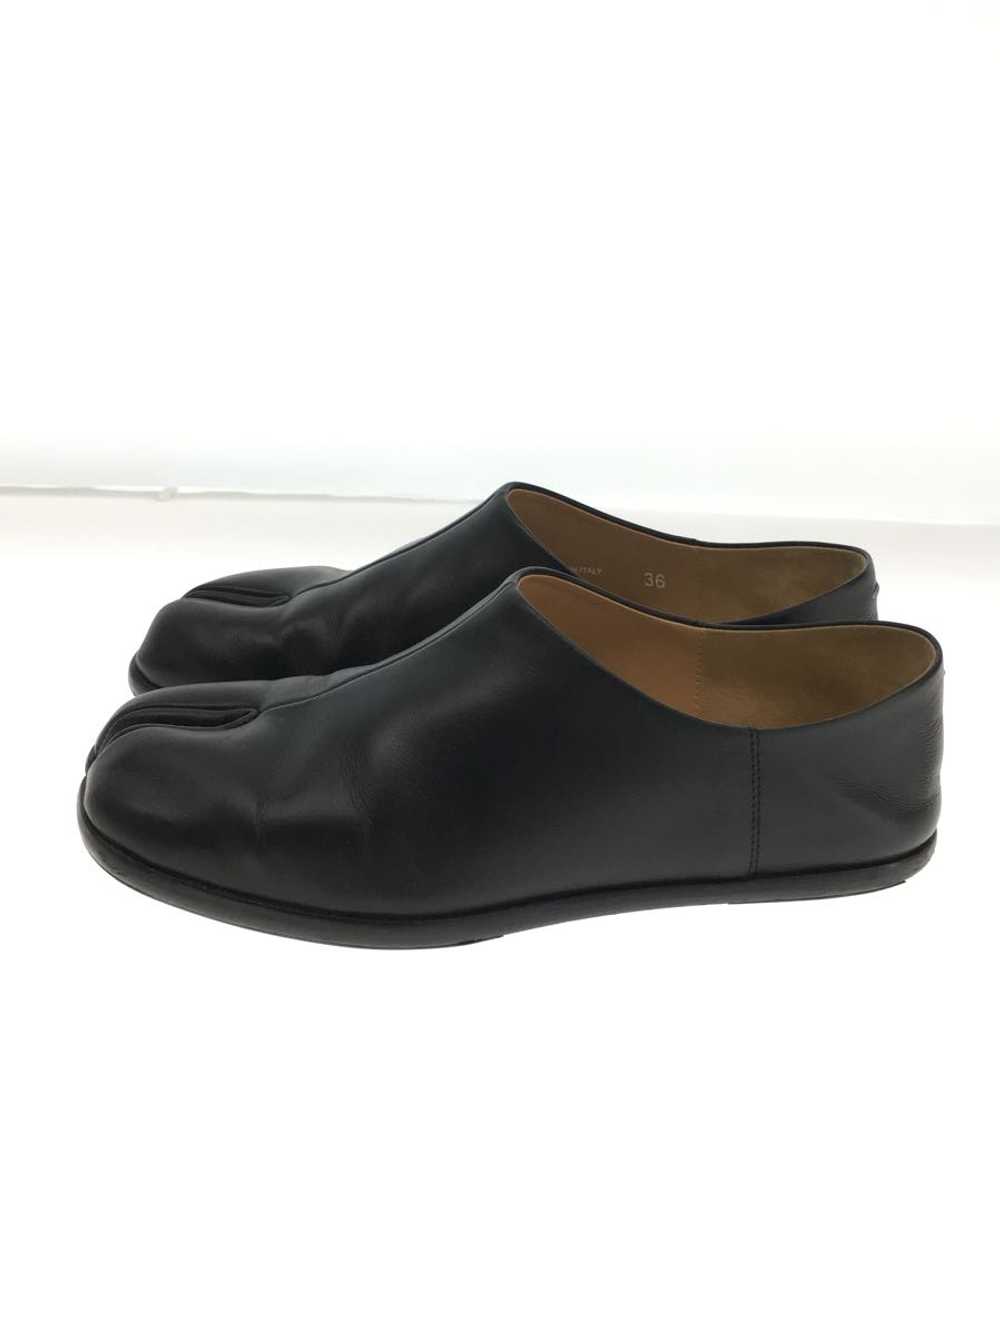 Maison Margiela Shoes/36/Blk/Leather/S58Wr0033 Sh… - image 1